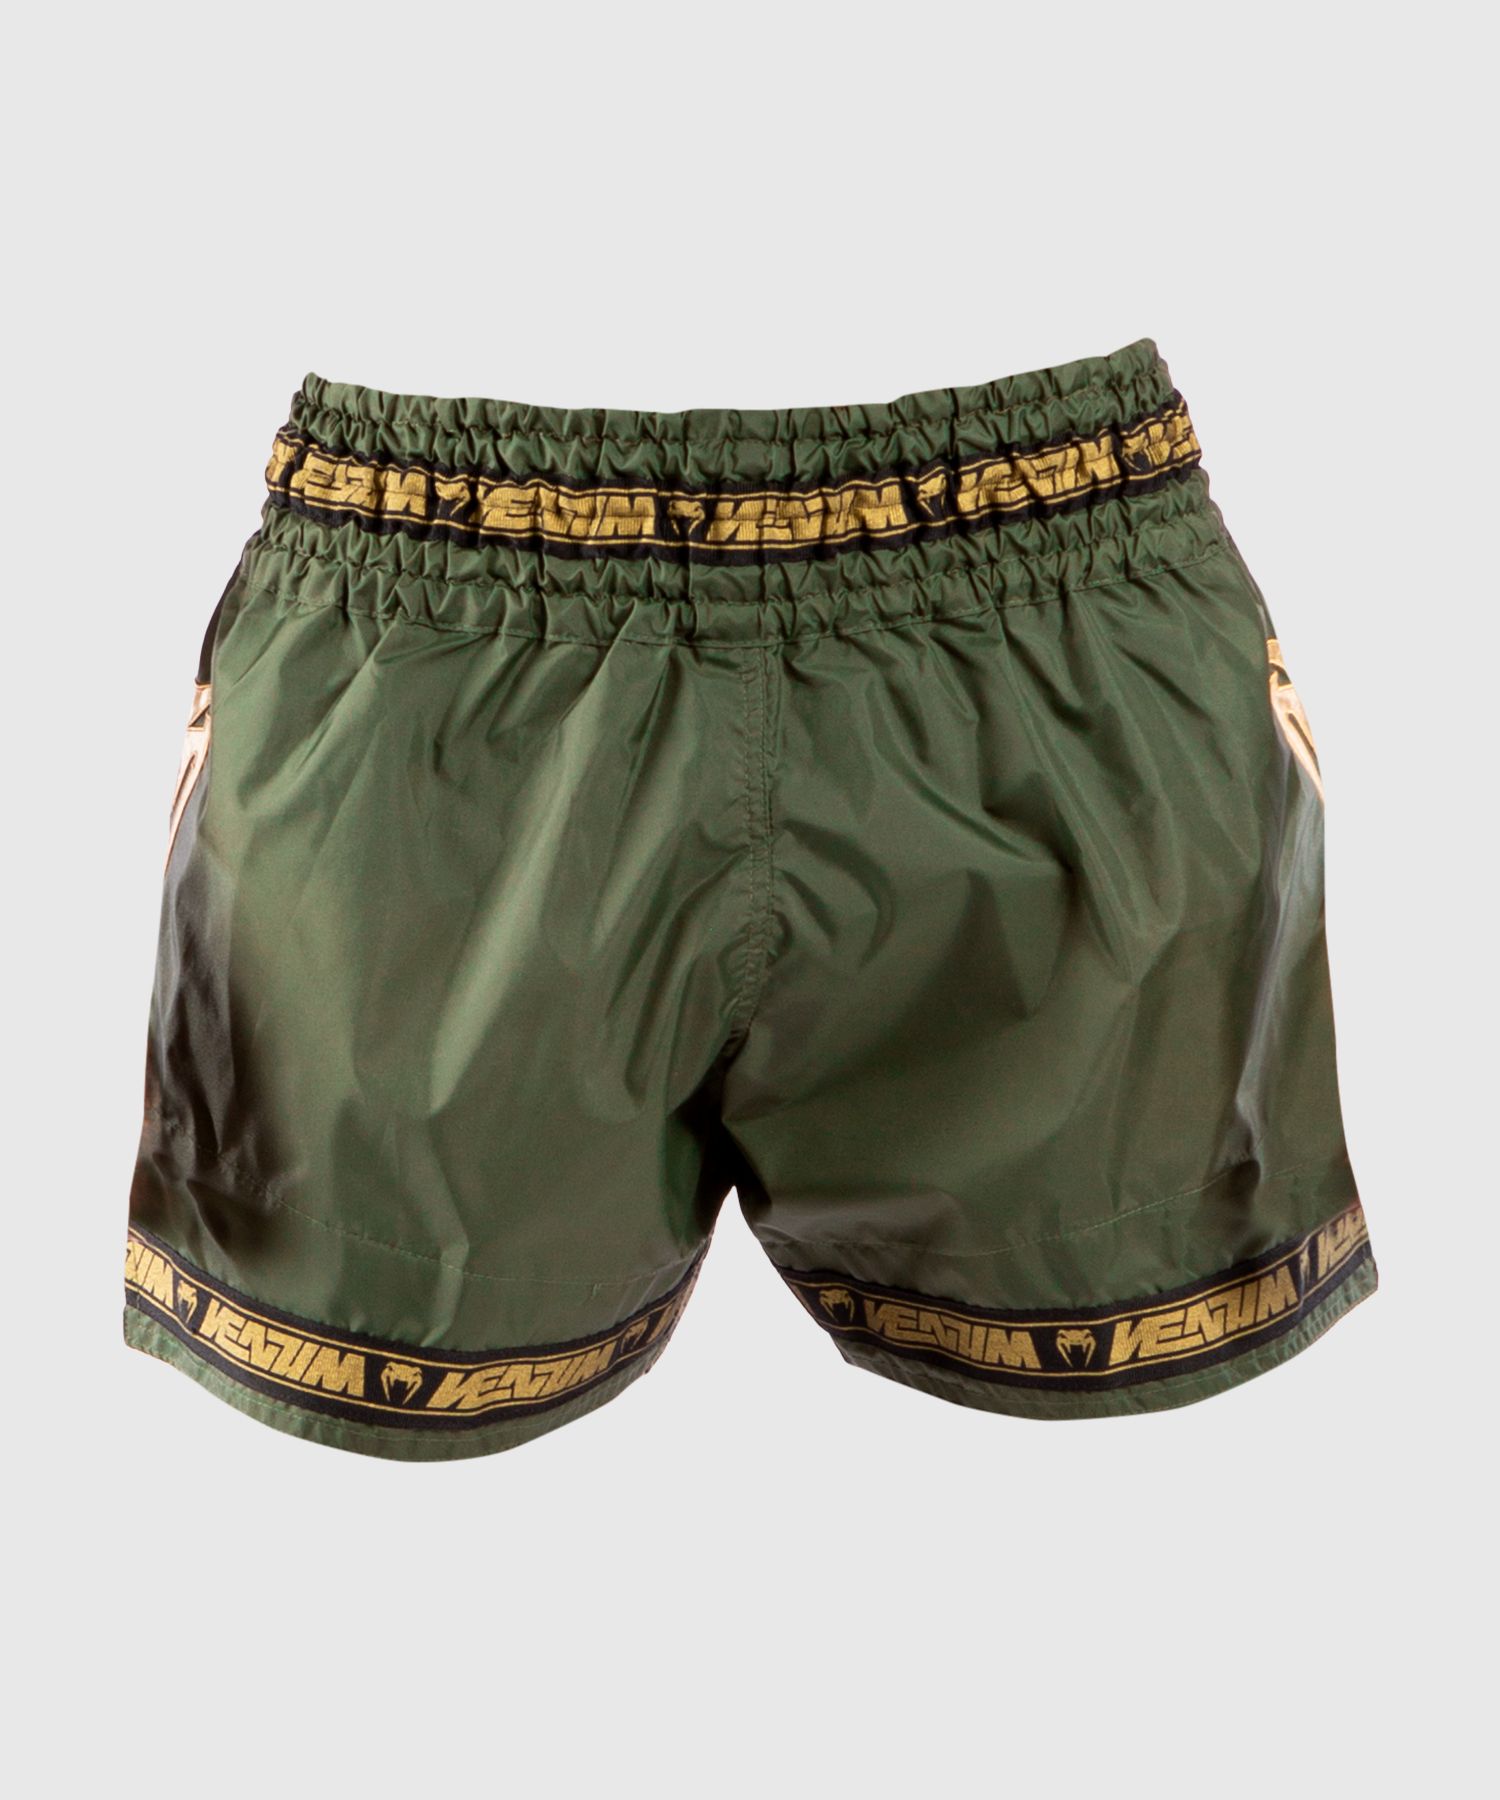 Venum Muay Thai Parachute Shorts - Khaki / Gold 